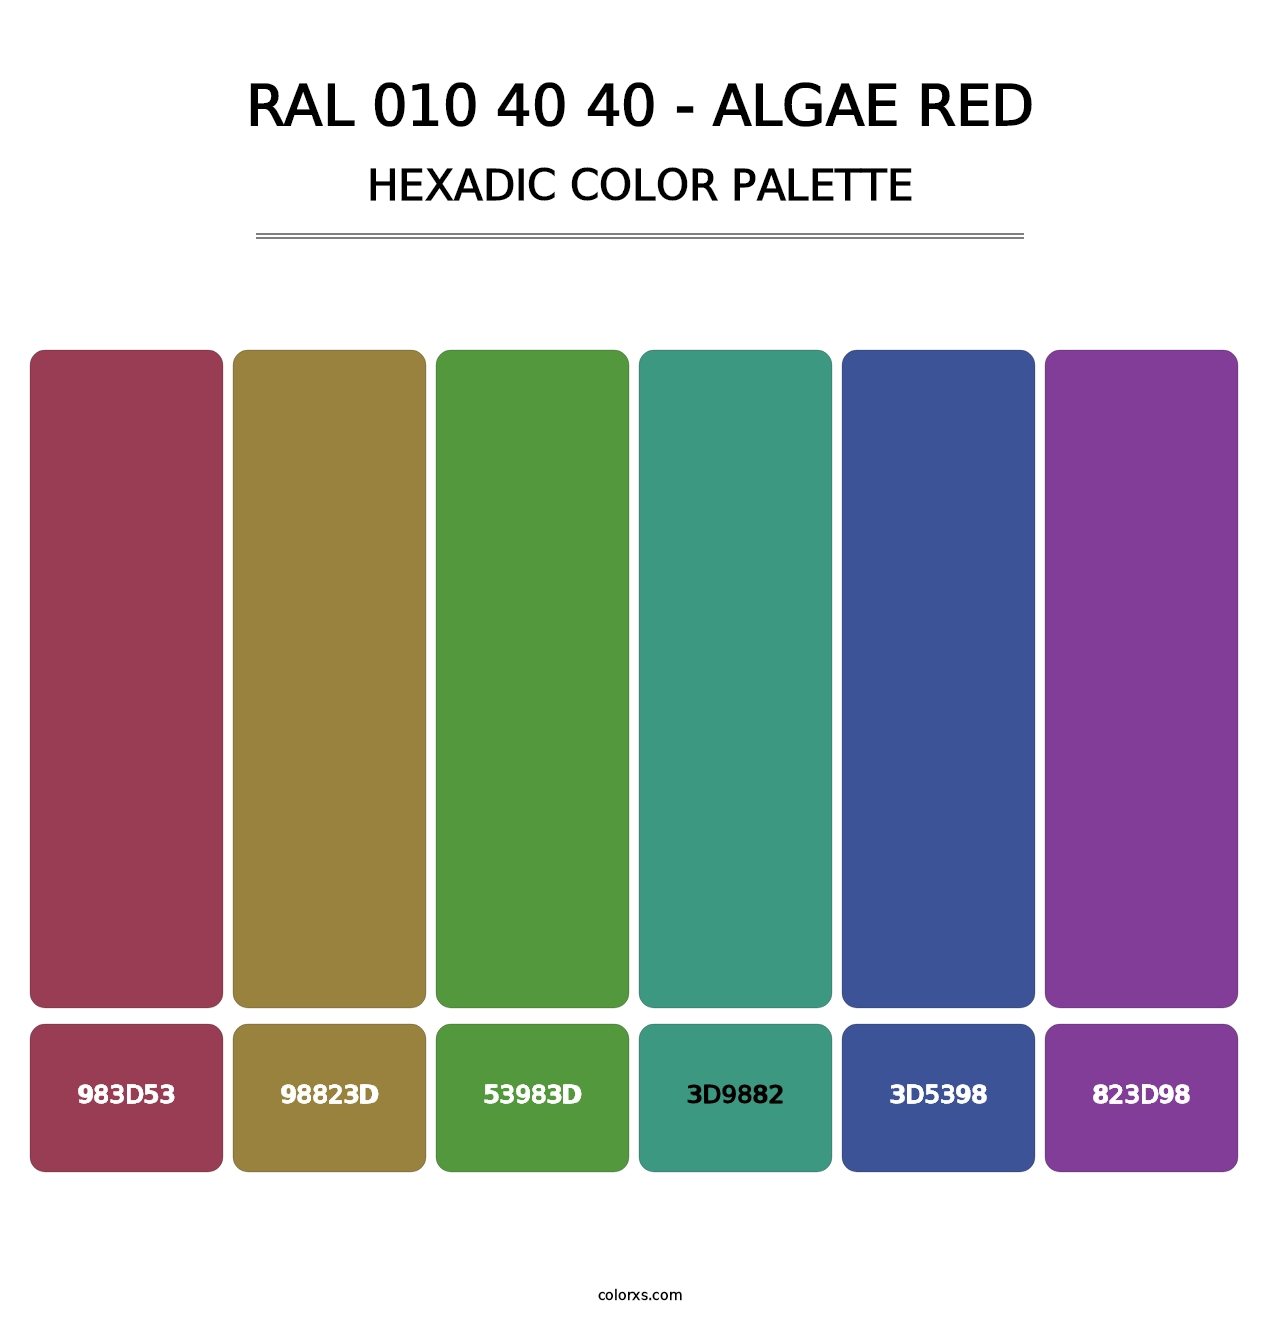 RAL 010 40 40 - Algae Red - Hexadic Color Palette